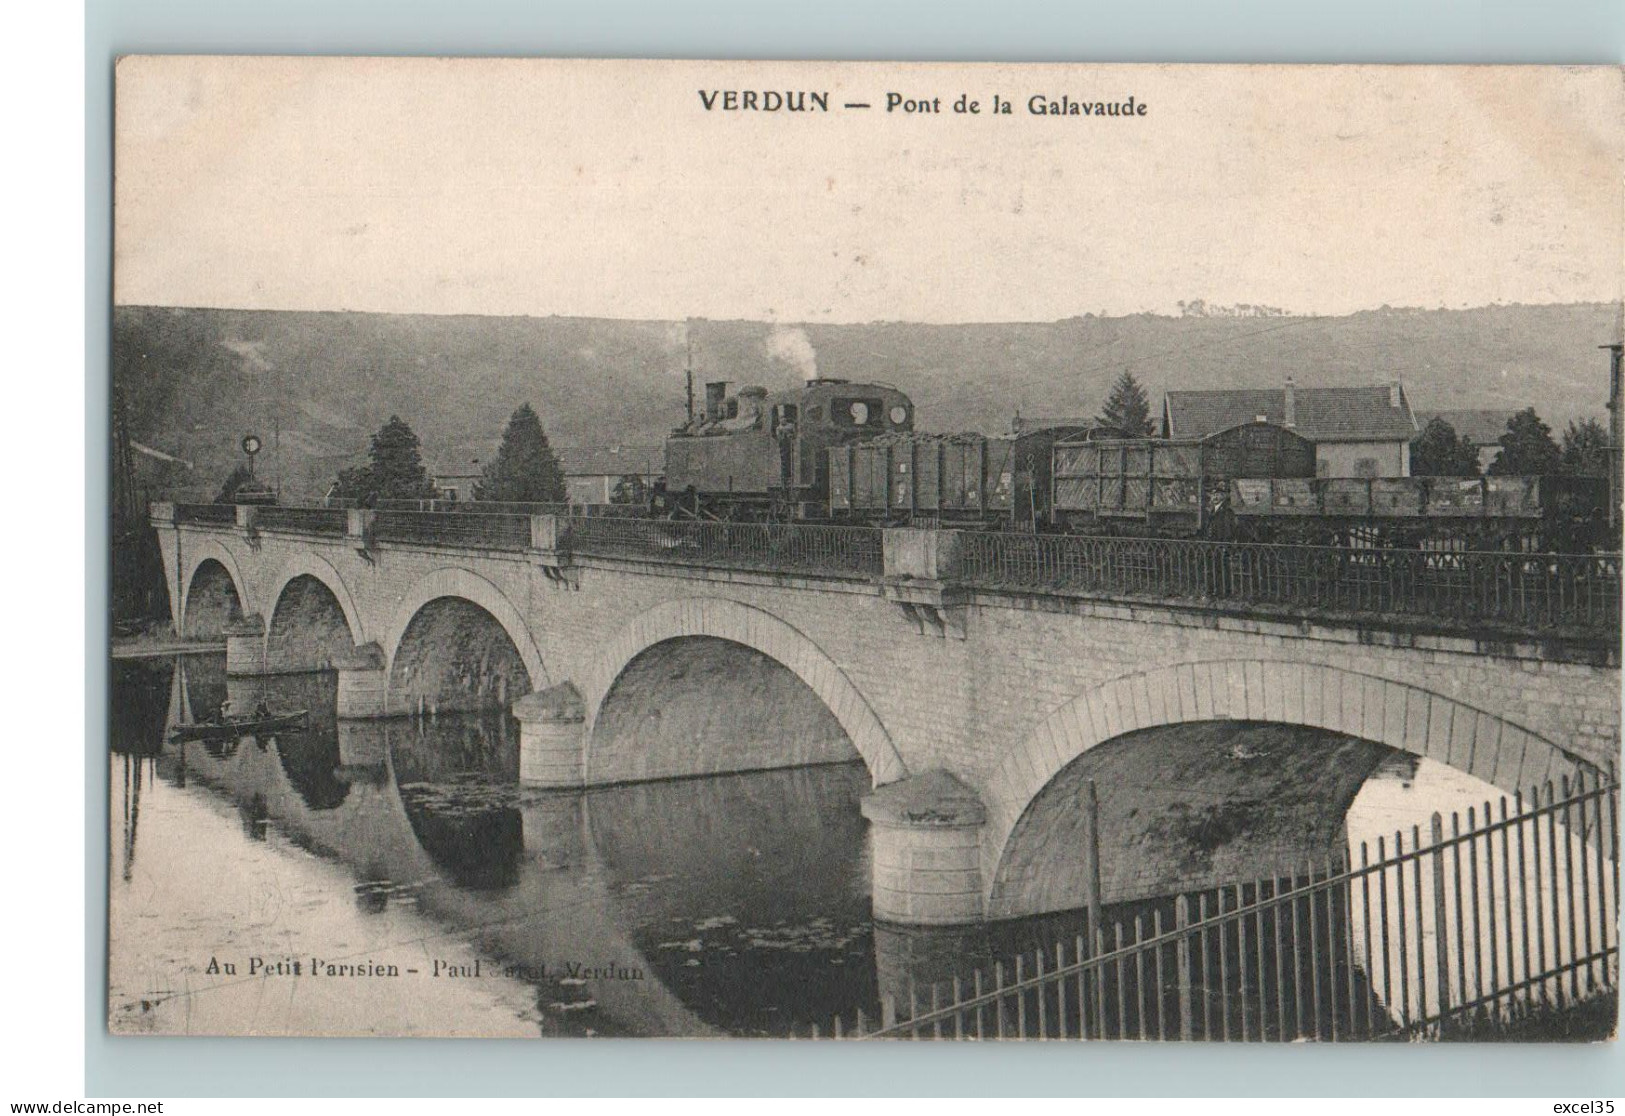 55 VERDUN - CPA NV - TRAIN DE MARCHANDISES SUR LE PONT DE LA GALAVAUDE - Locomotive à Vapeur - Structures